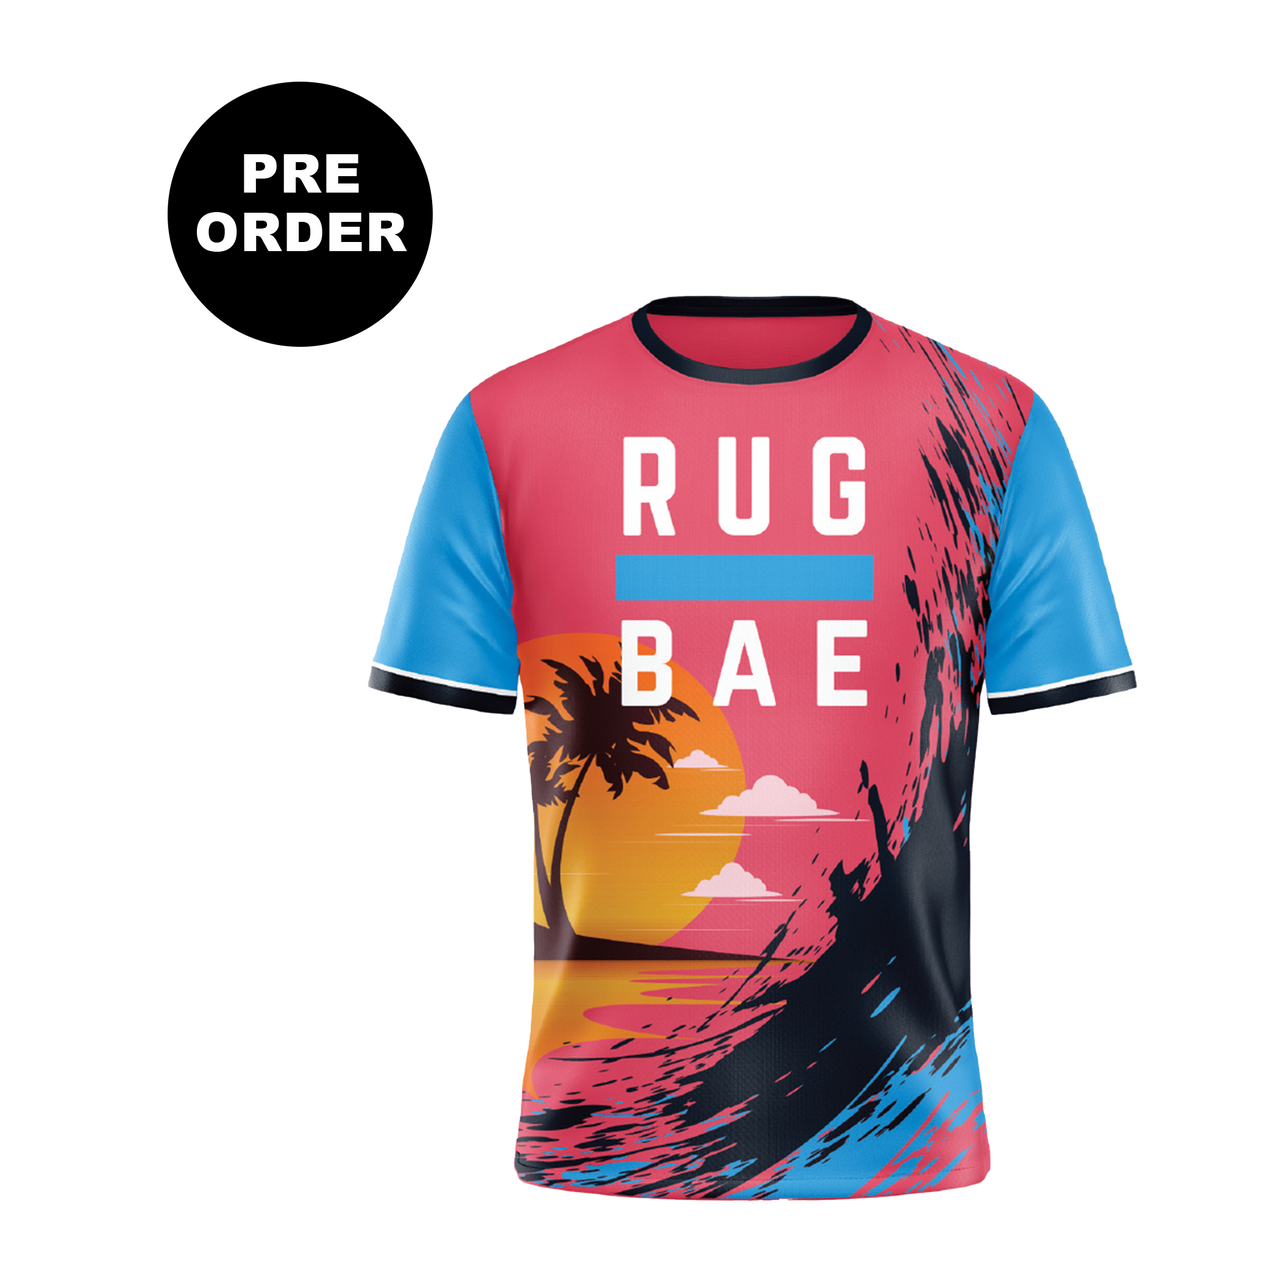 Rug Bae Training T-Shirt